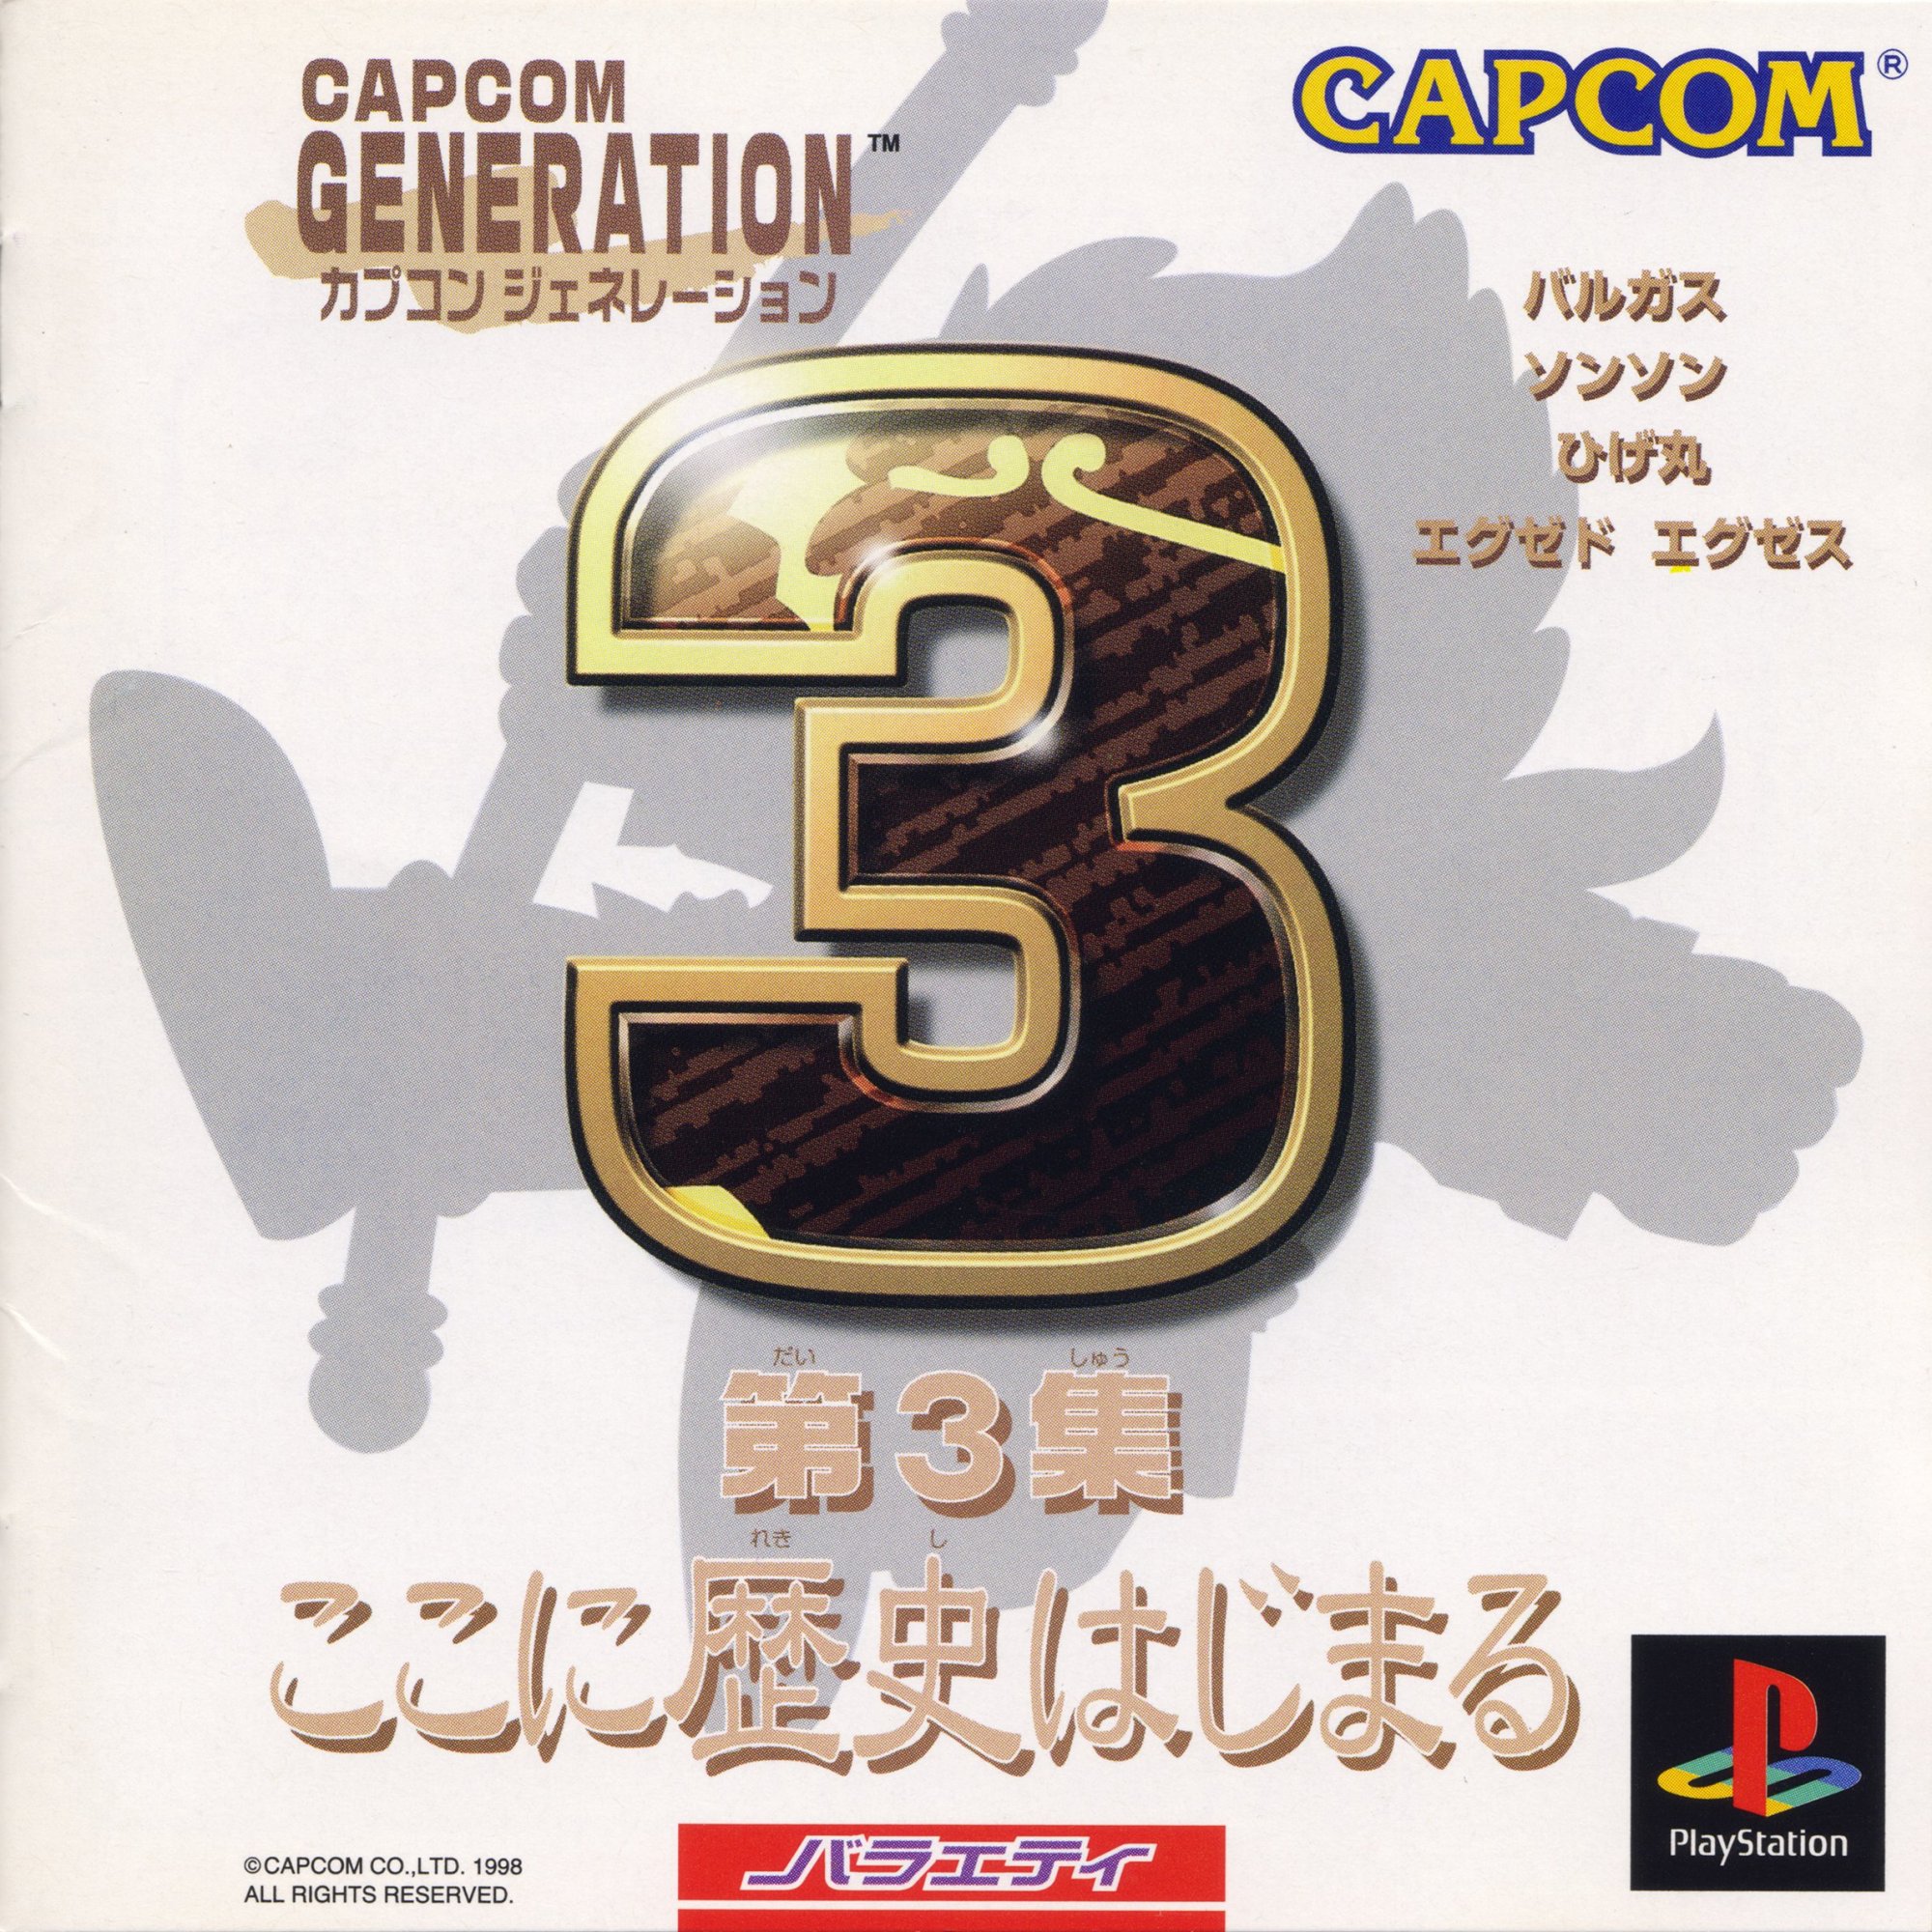 Capcom Generation 3: Dai 3 Shuu Koko ni Rekishi Hajimaru